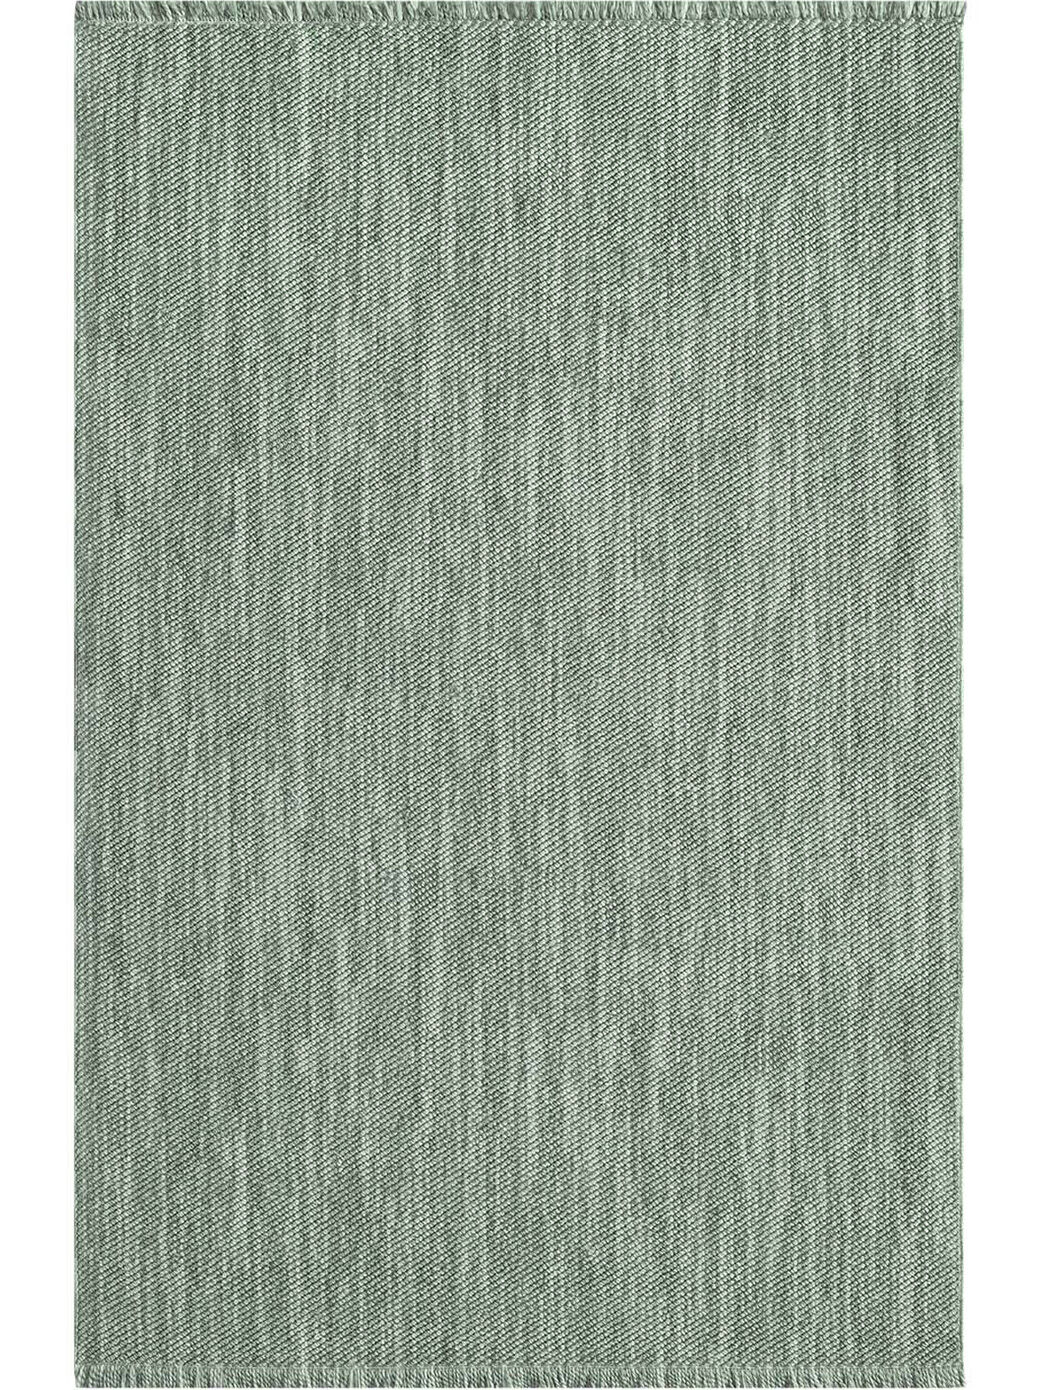 Teppich Wolle Optik Gruen 160x230 1